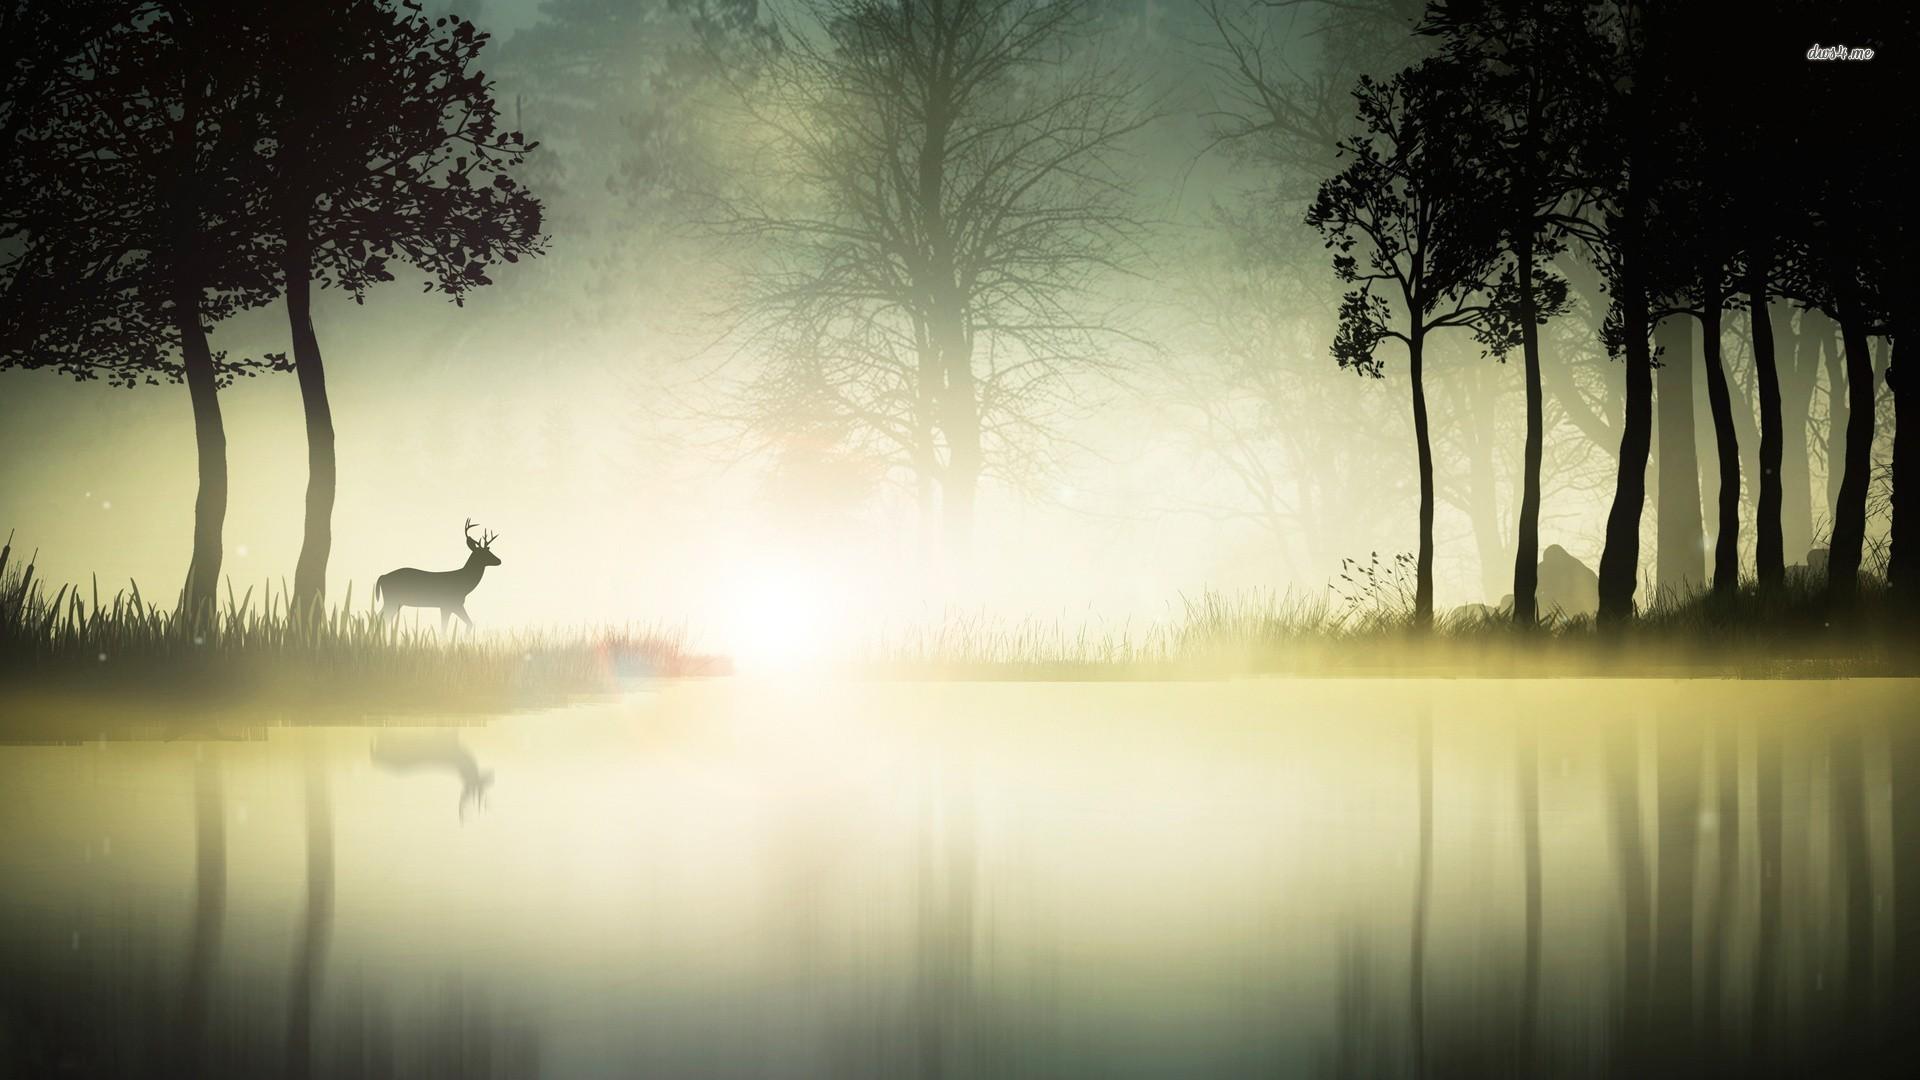 Deer at the foggy lake wallpaper wallpaper